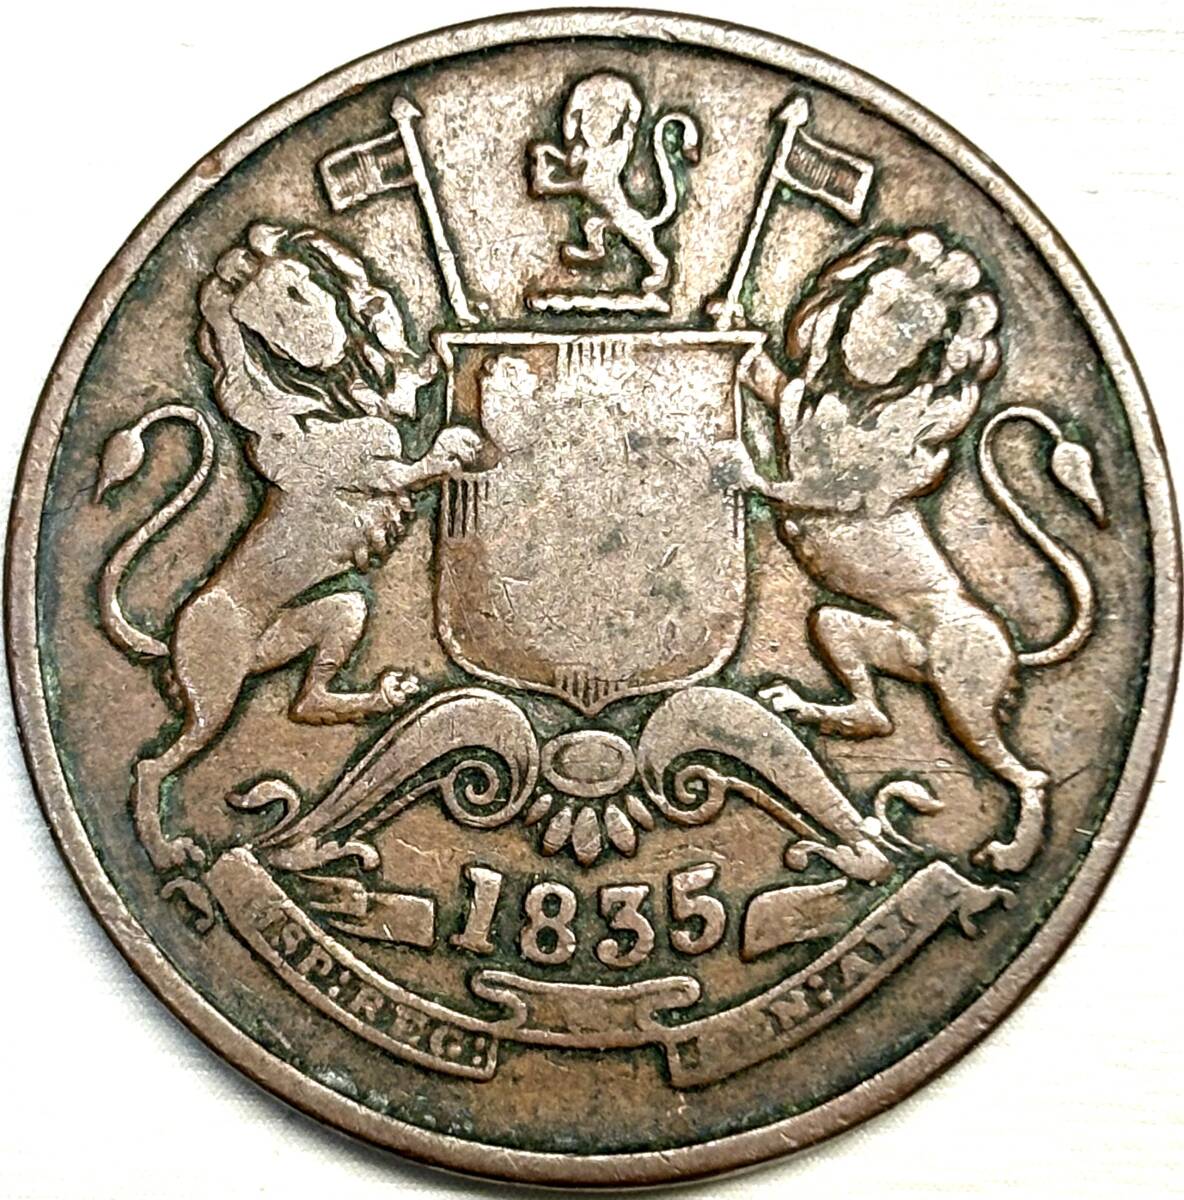 【英領東インド会社銅貨】(1835年銘 12.3g 直径30.5mm)の画像1